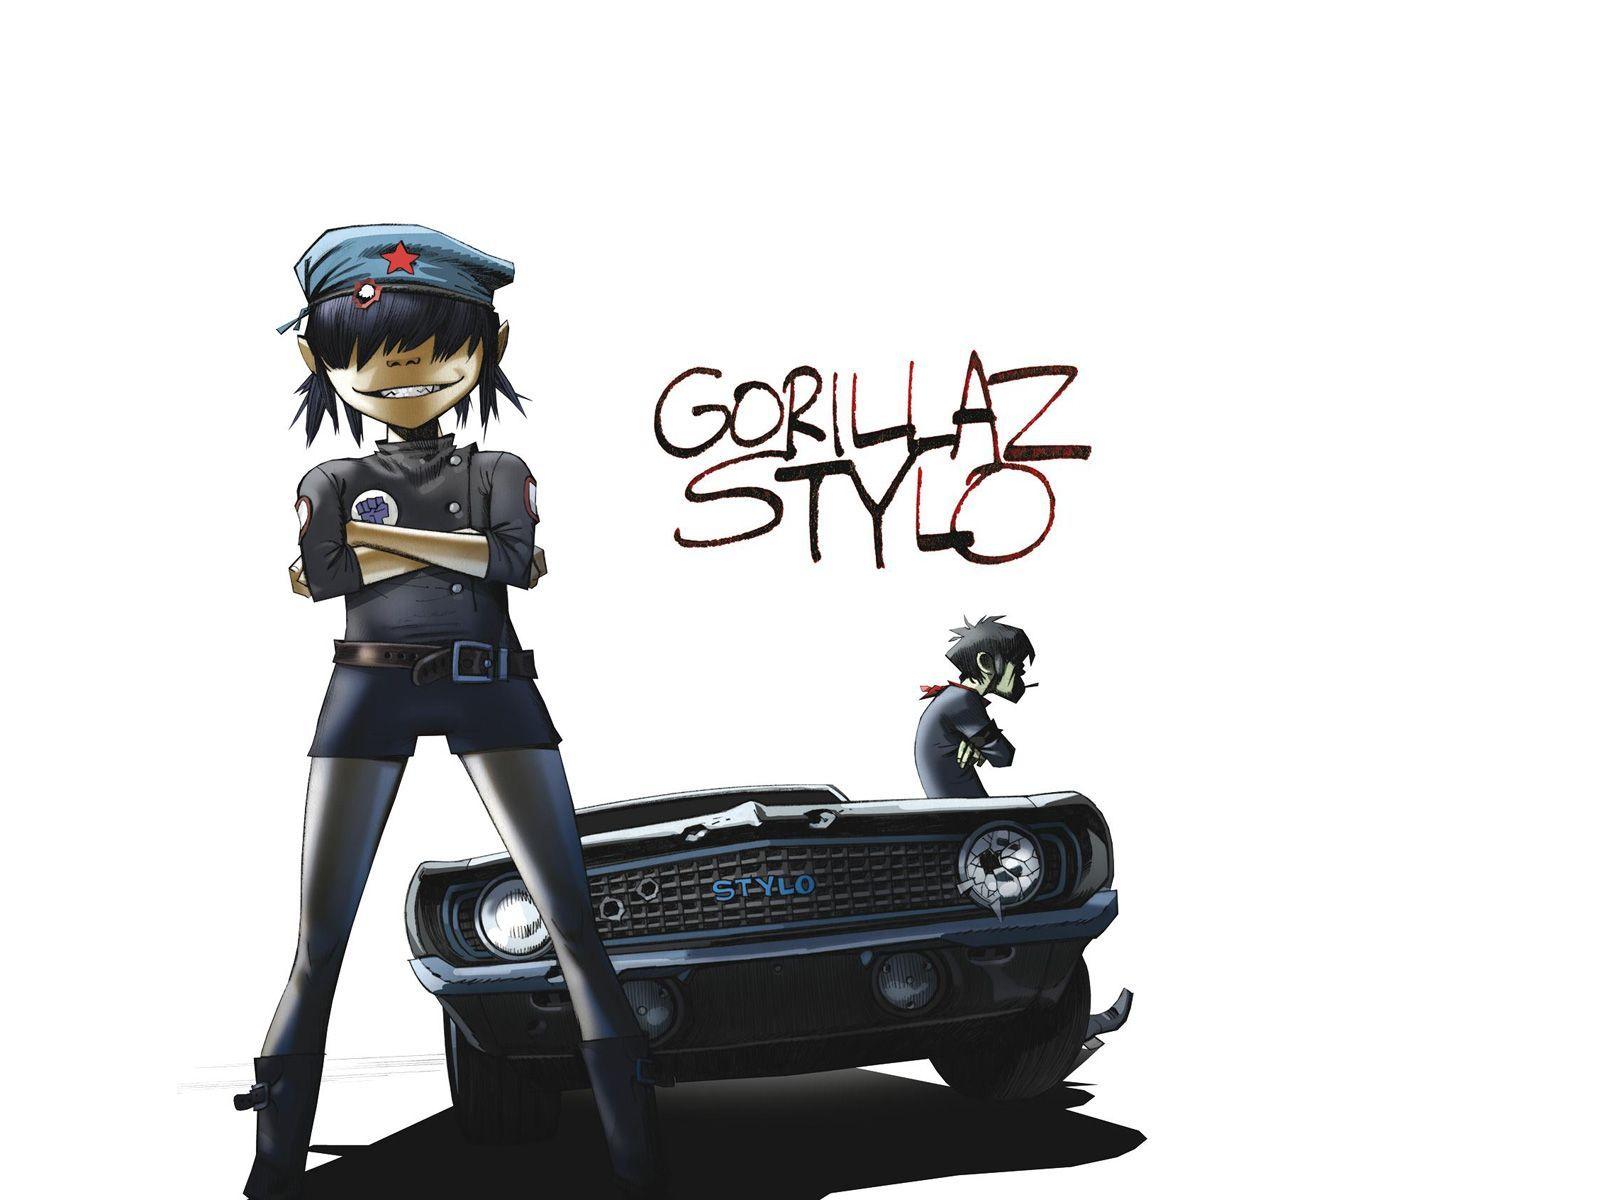 Free Stylo of Gorillaz Wallpaper, Free Stylo of Gorillaz HD